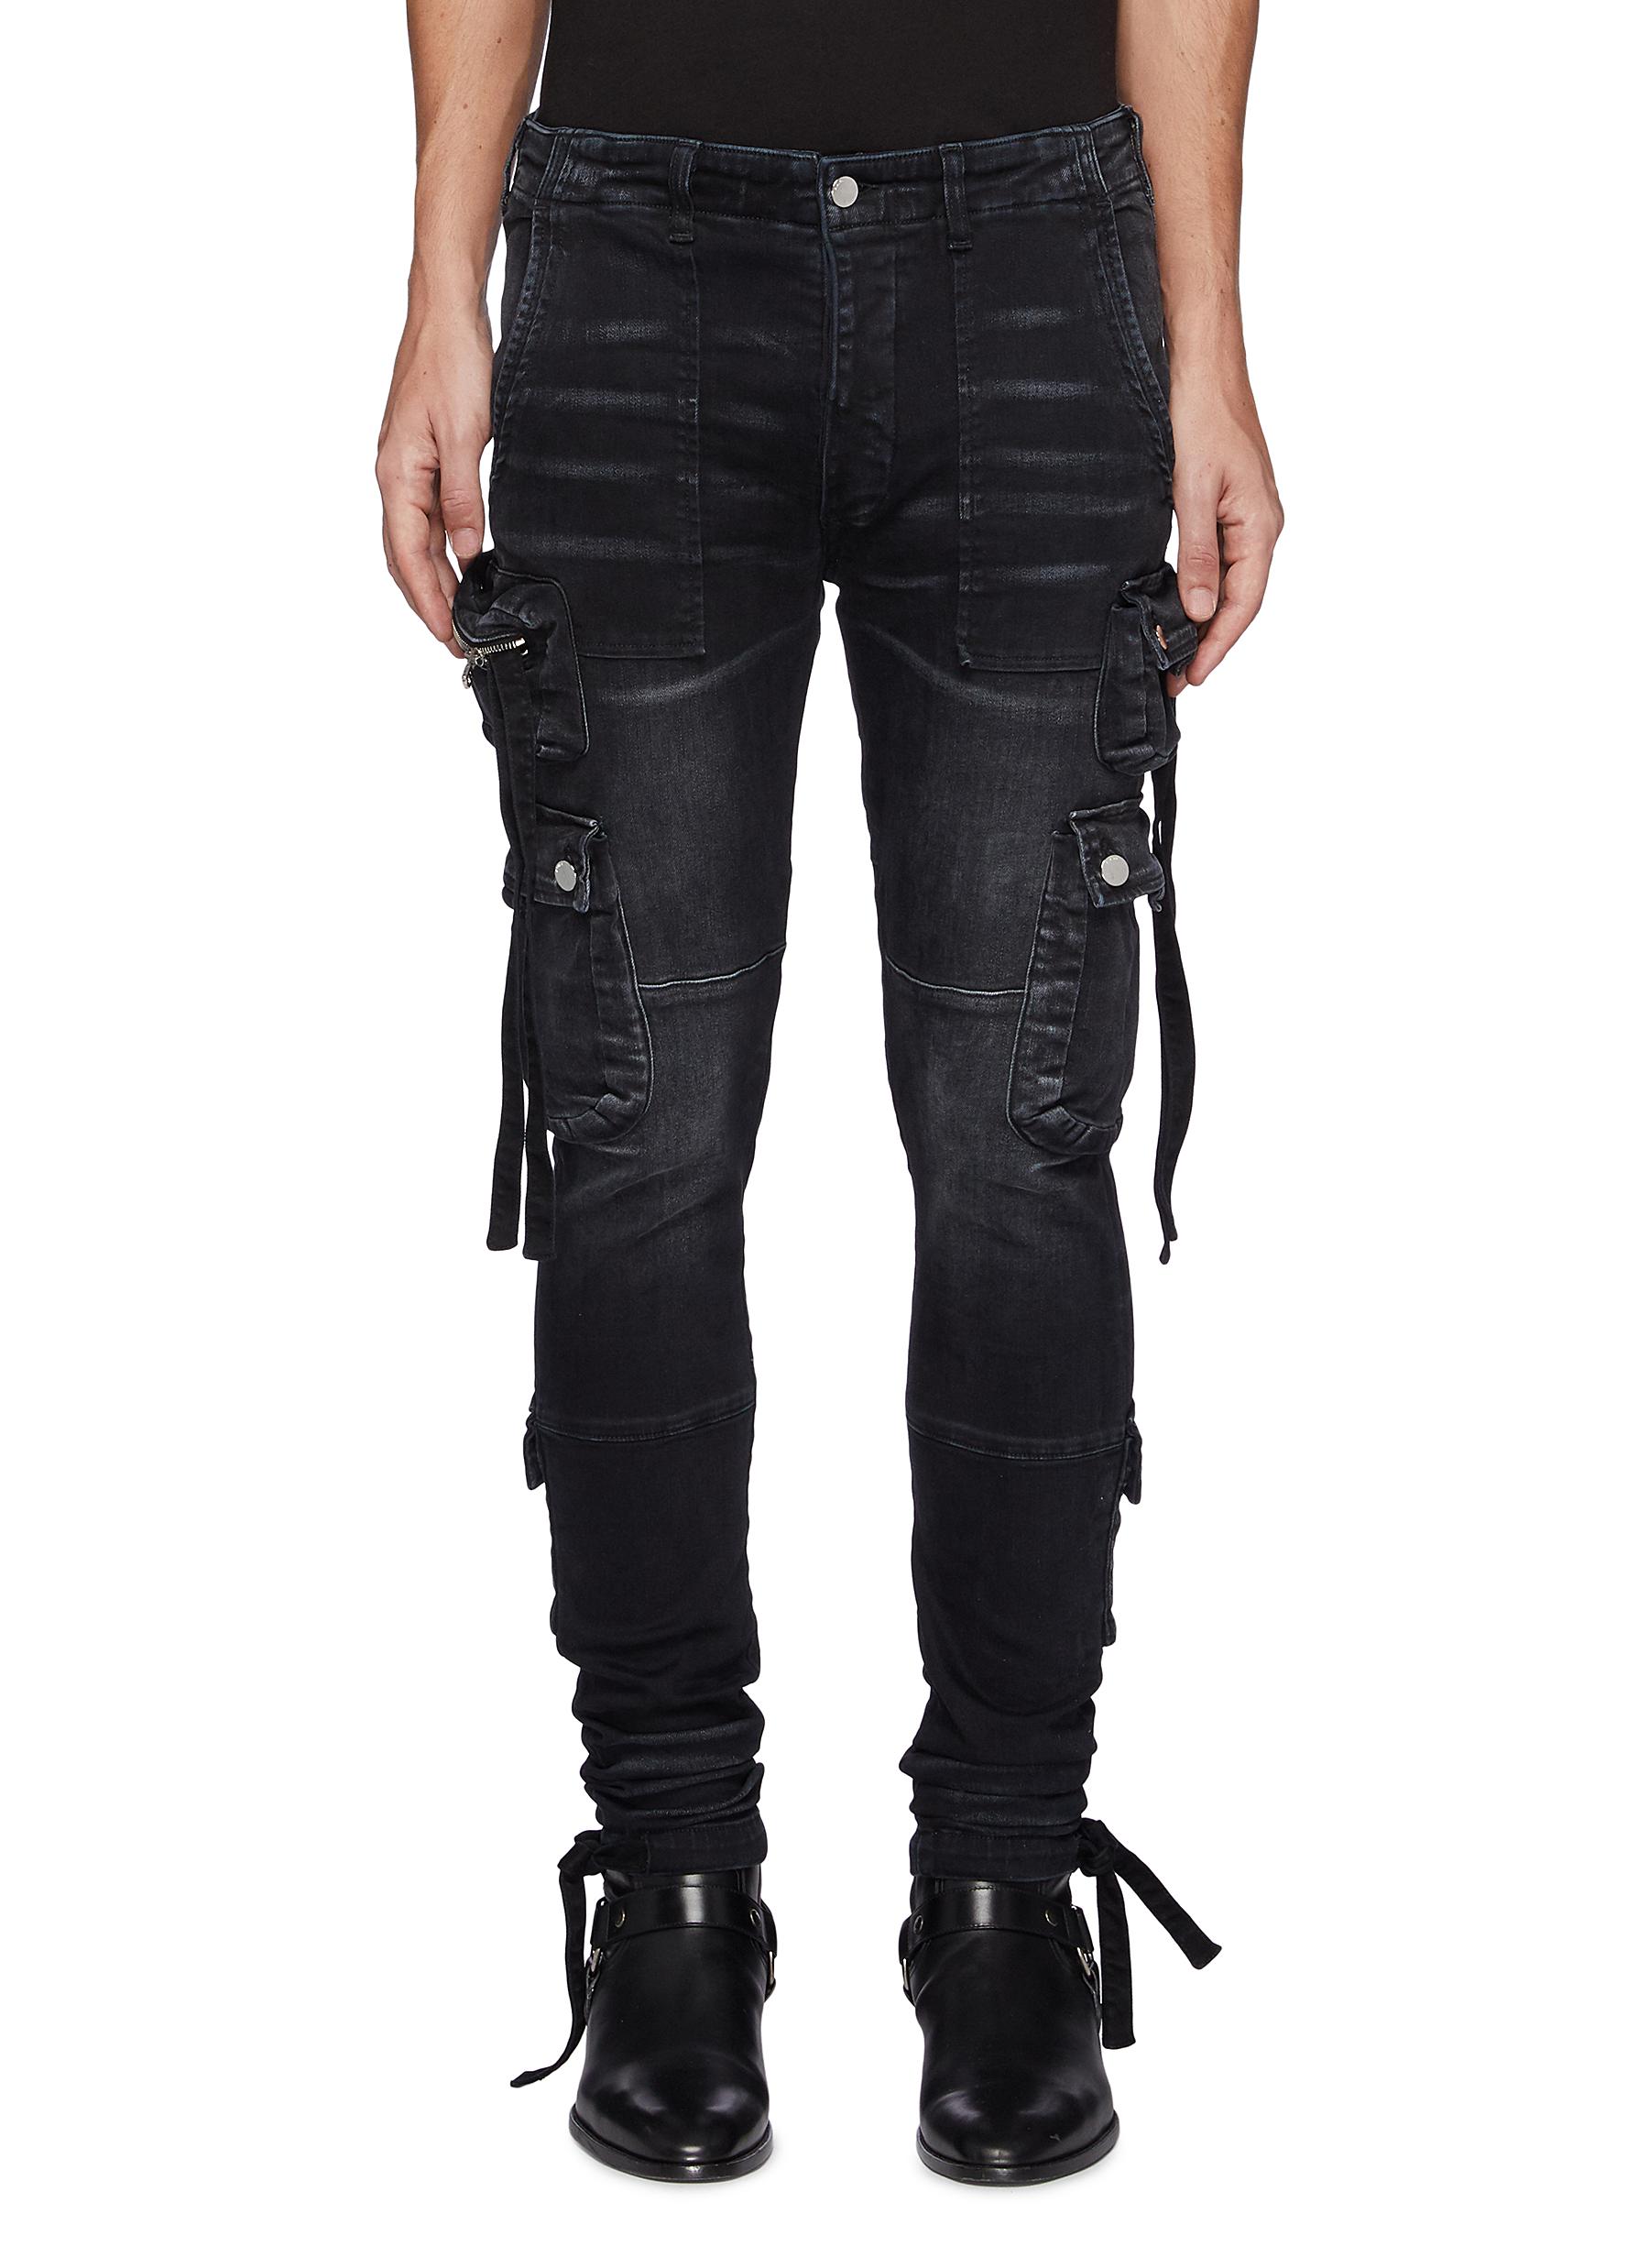 Strap Adorned Cargo Washed Black Jeans